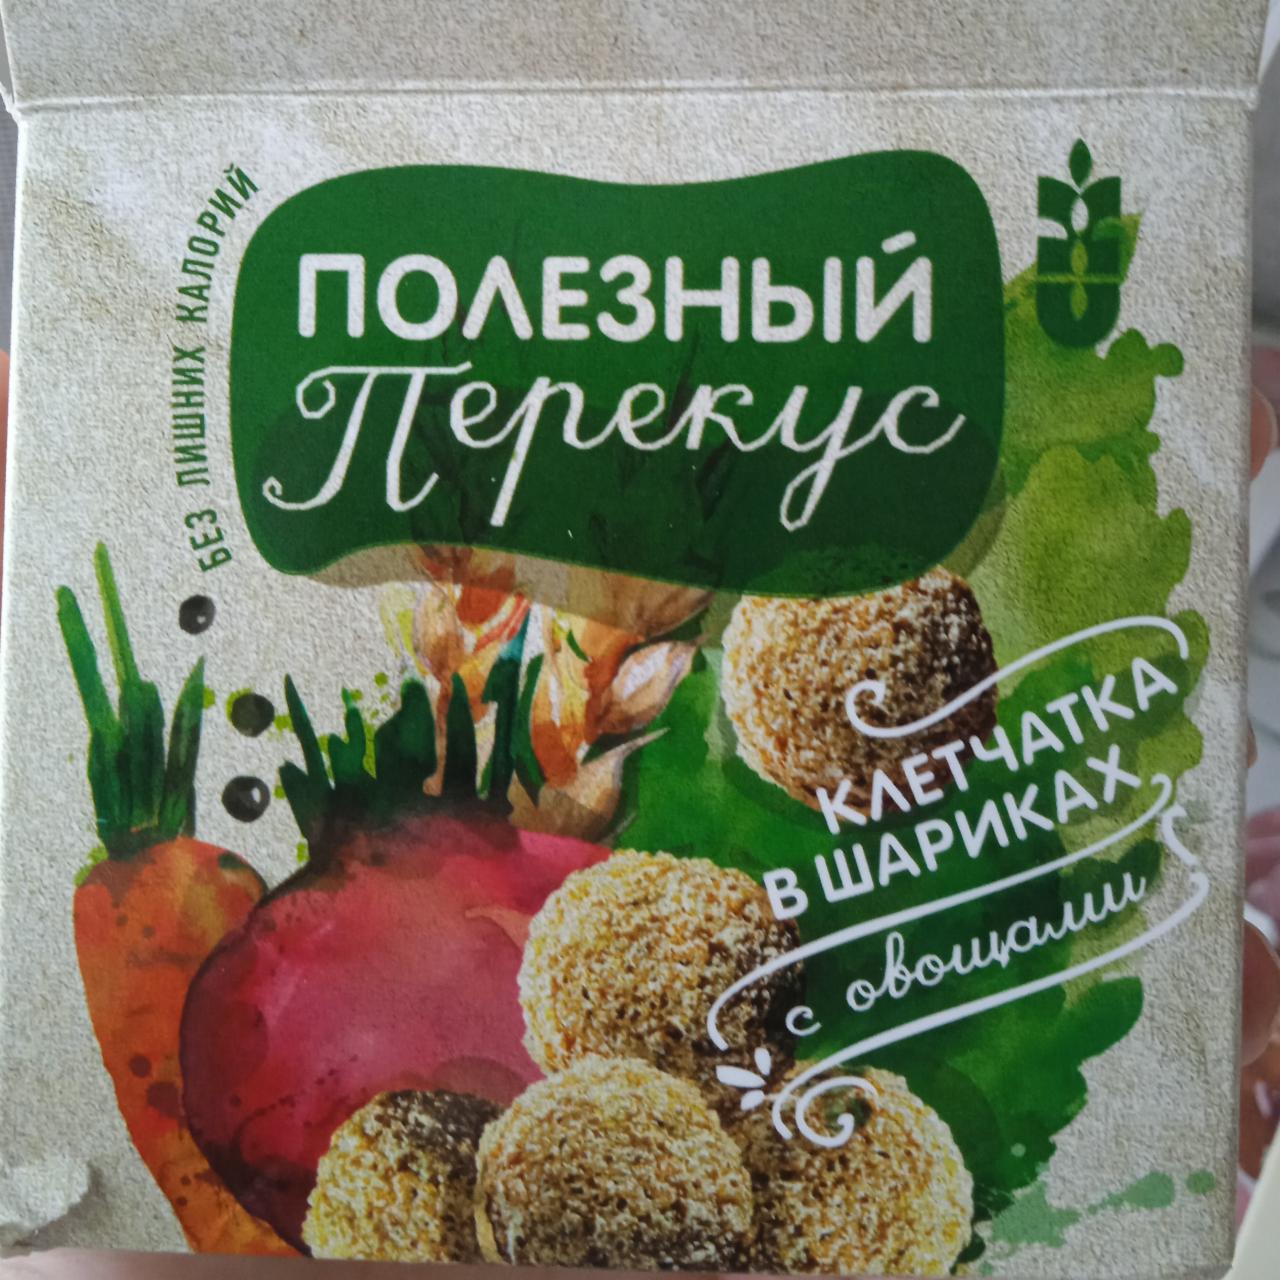 Фото - полезный перекус клетчатка в шариках с овощами Сибирская клетчатка